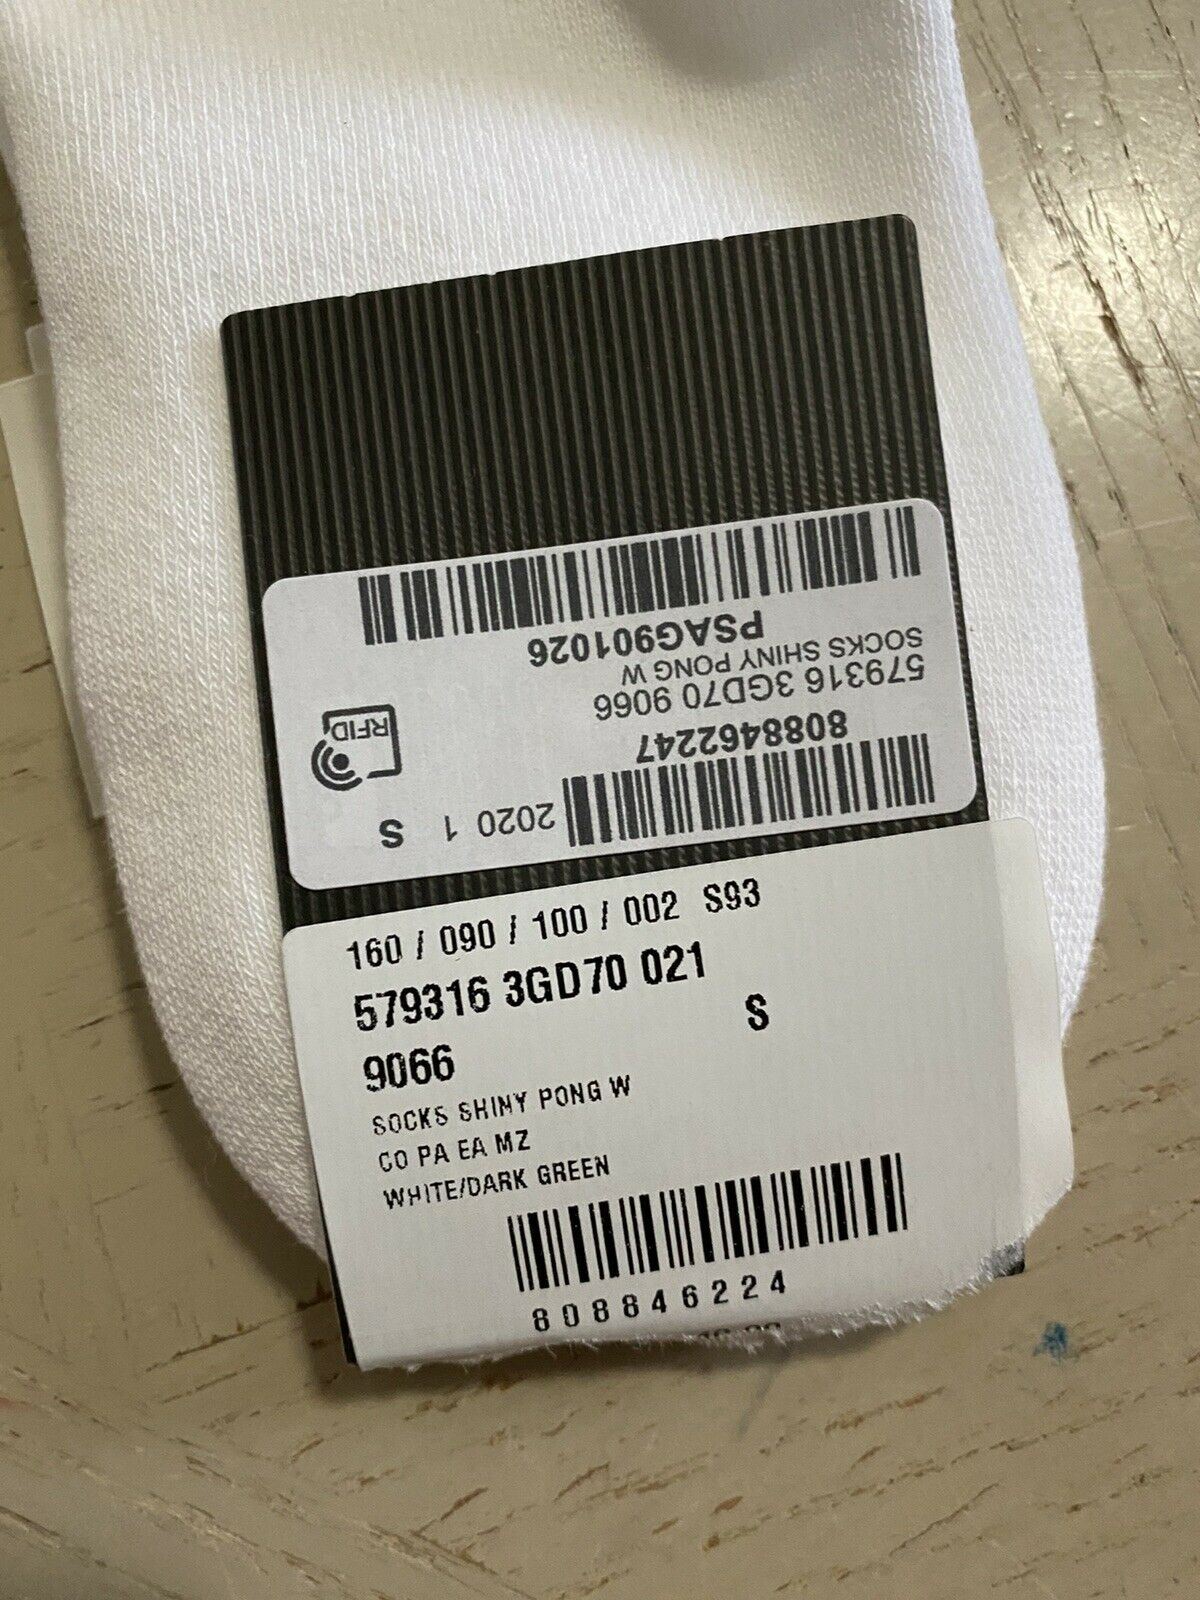 Neu mit Etikett: Gucci Herren-Baumwollsocken mit Gucci-Monogramm, Weiß, Größe S, Italien